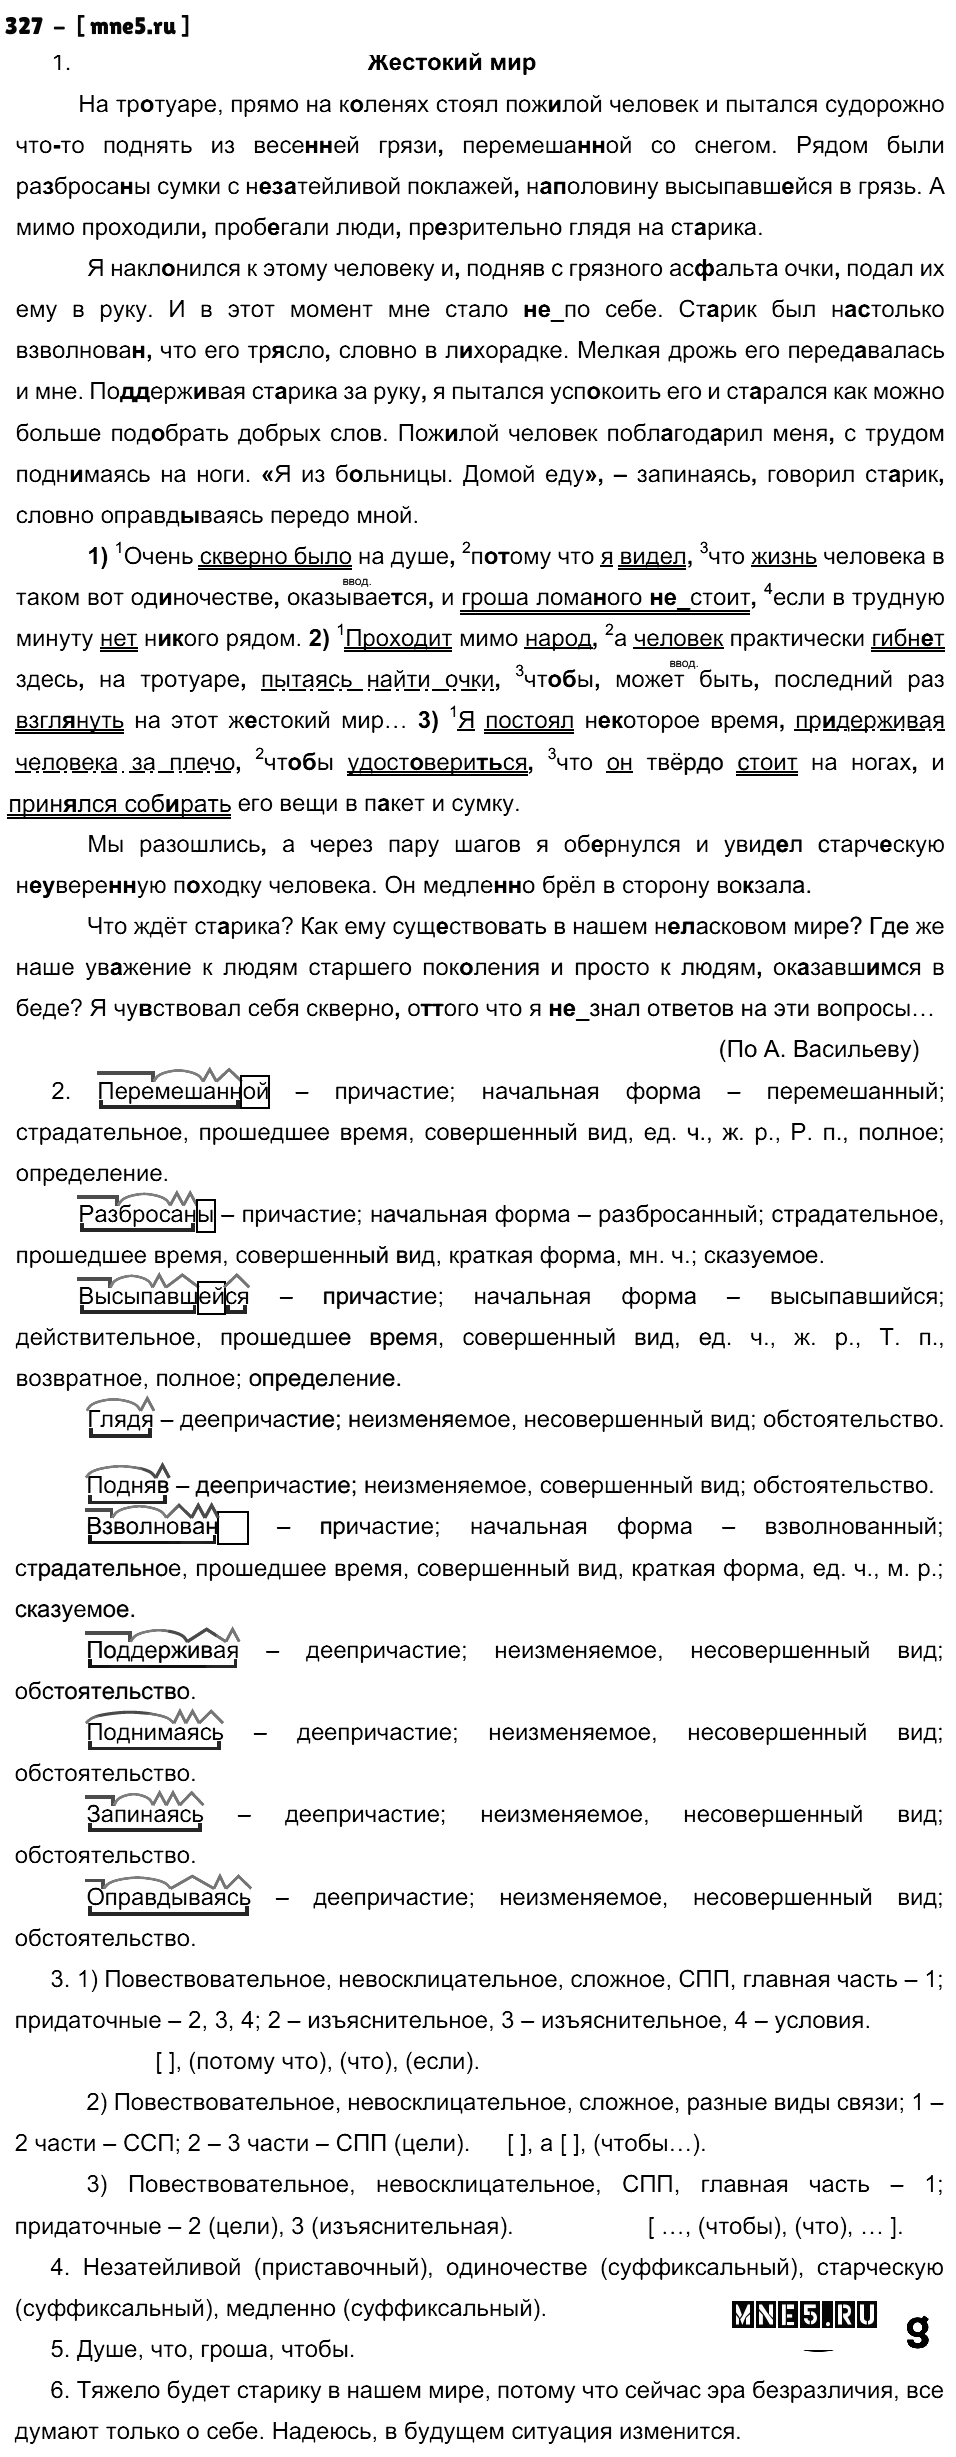 ГДЗ Русский язык 9 класс - 327